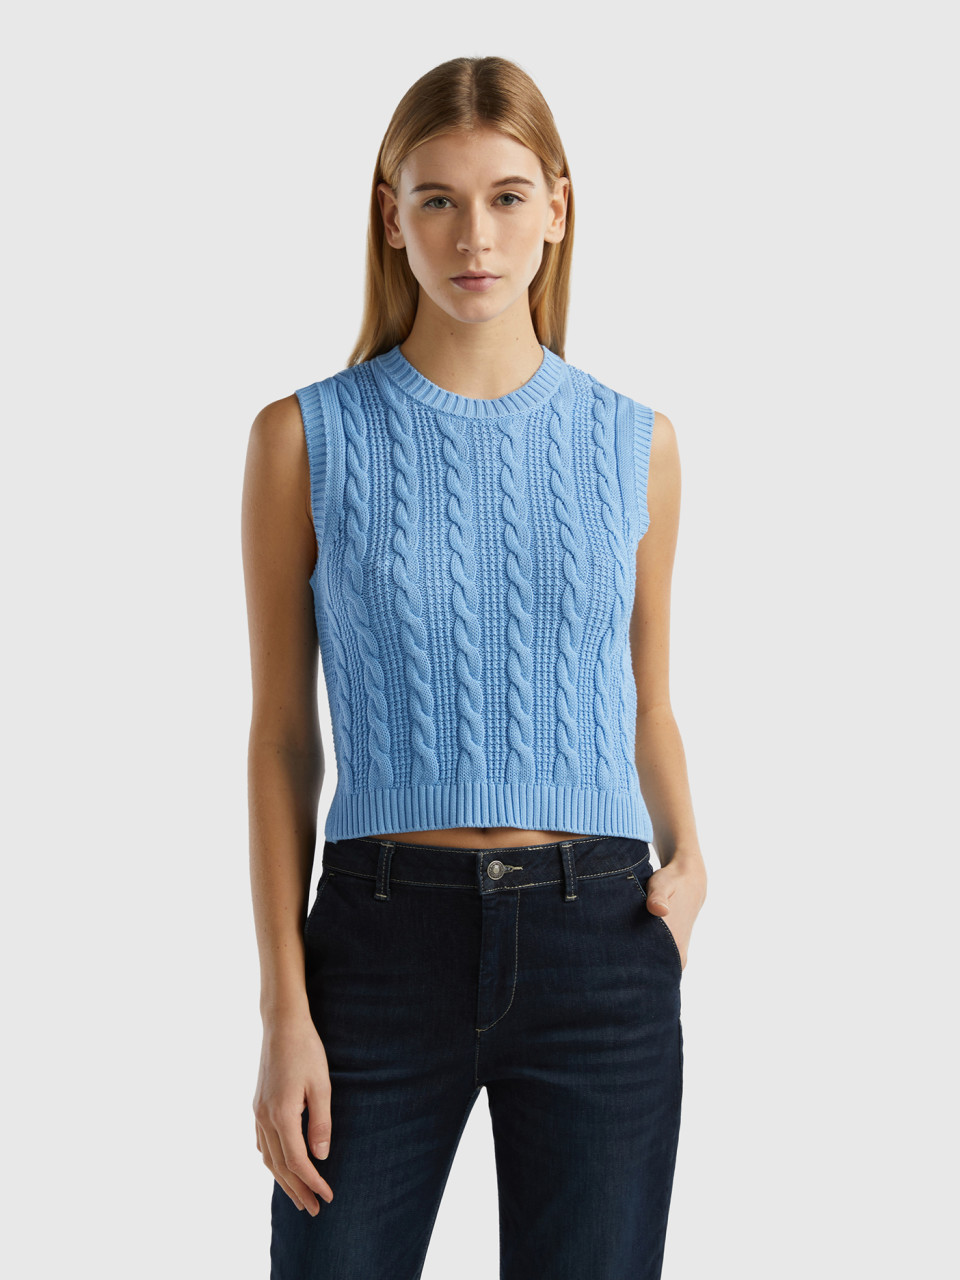 Benetton, Cropped Cable Knit Vest, Light Blue, Women